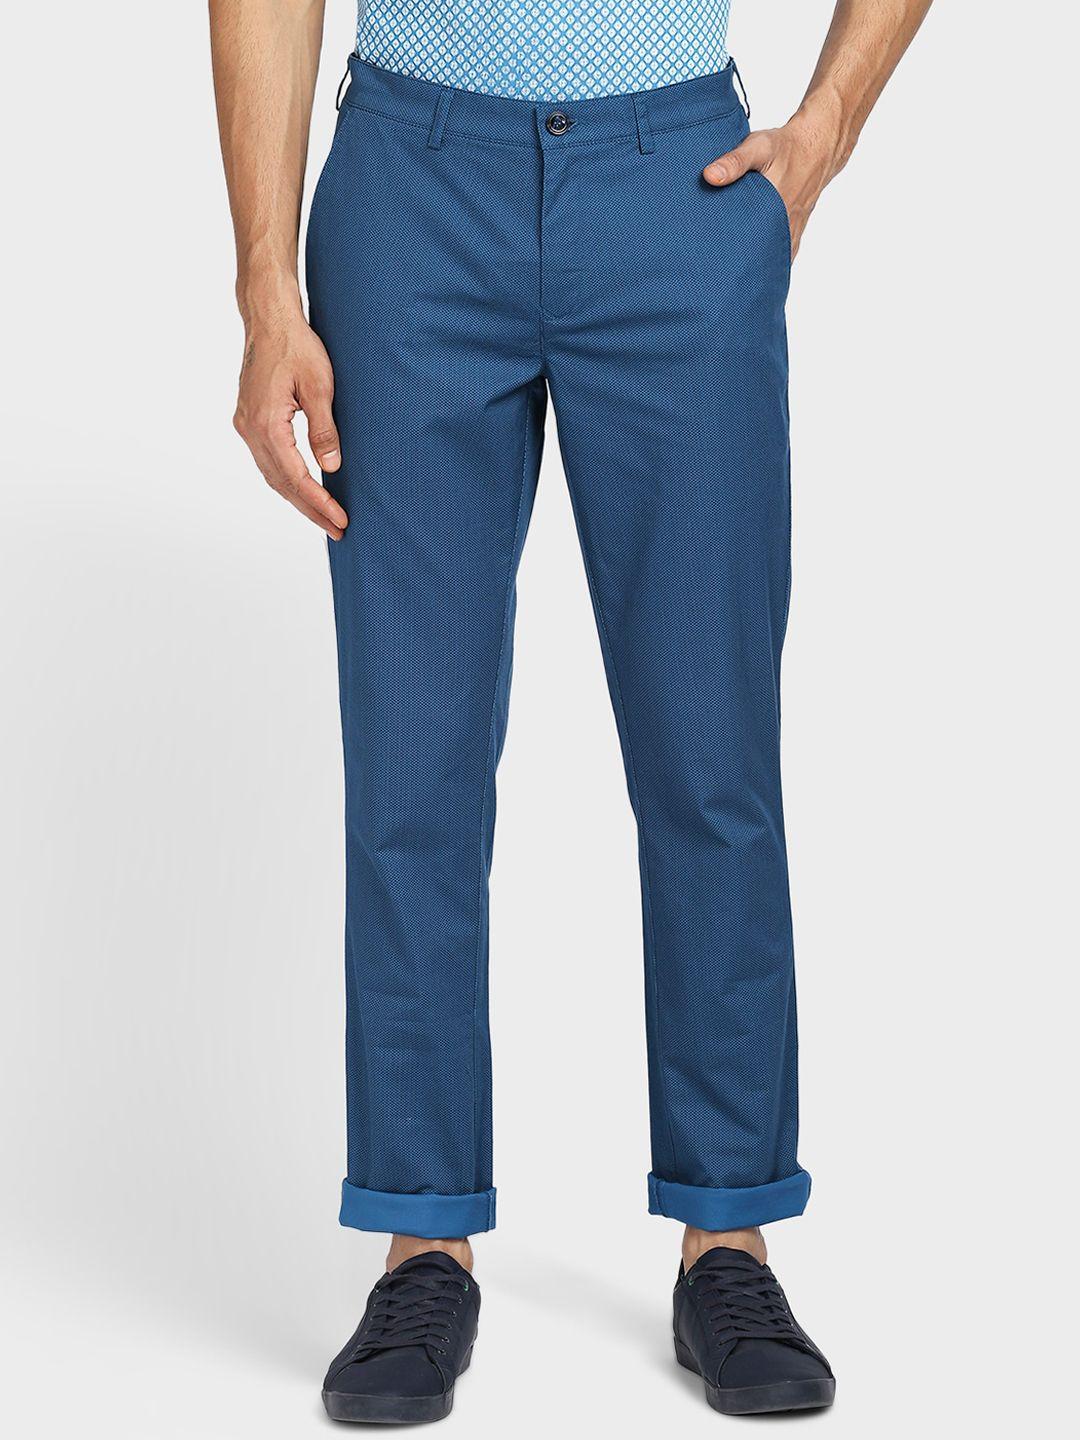 colorplus-men-blue-trousers